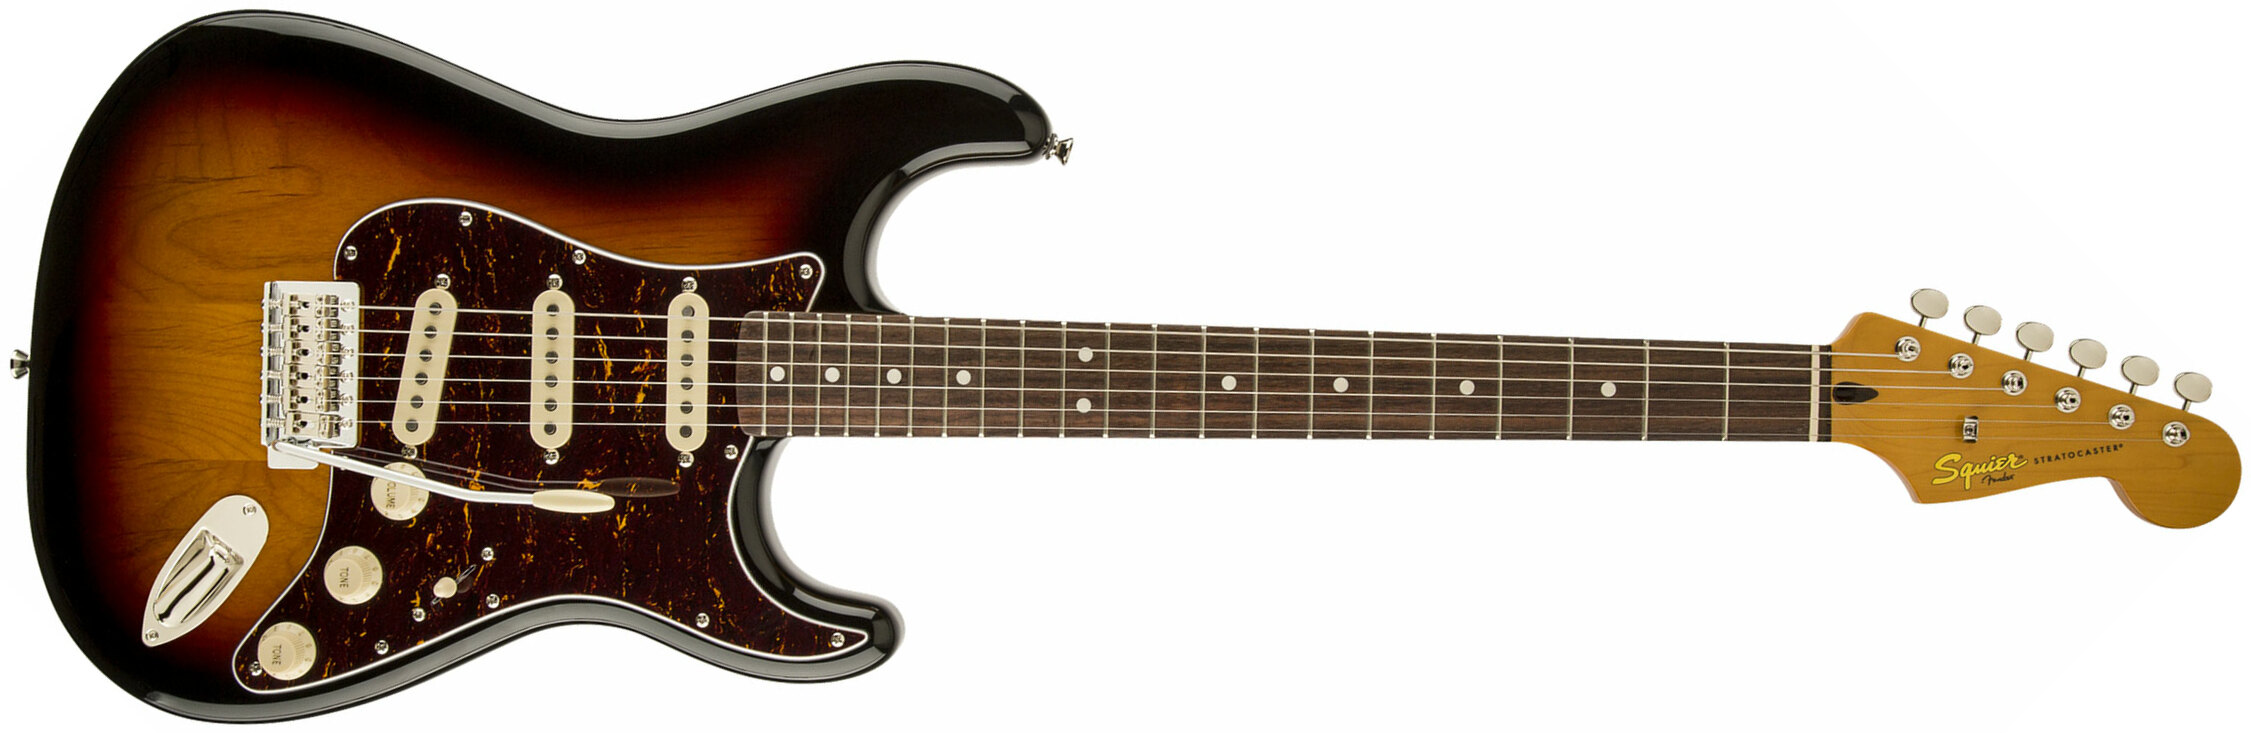 Squier Stratocaster Classic Vibe '60s Sss Lau - 3-color Sunburst - Str shape electric guitar - Main picture